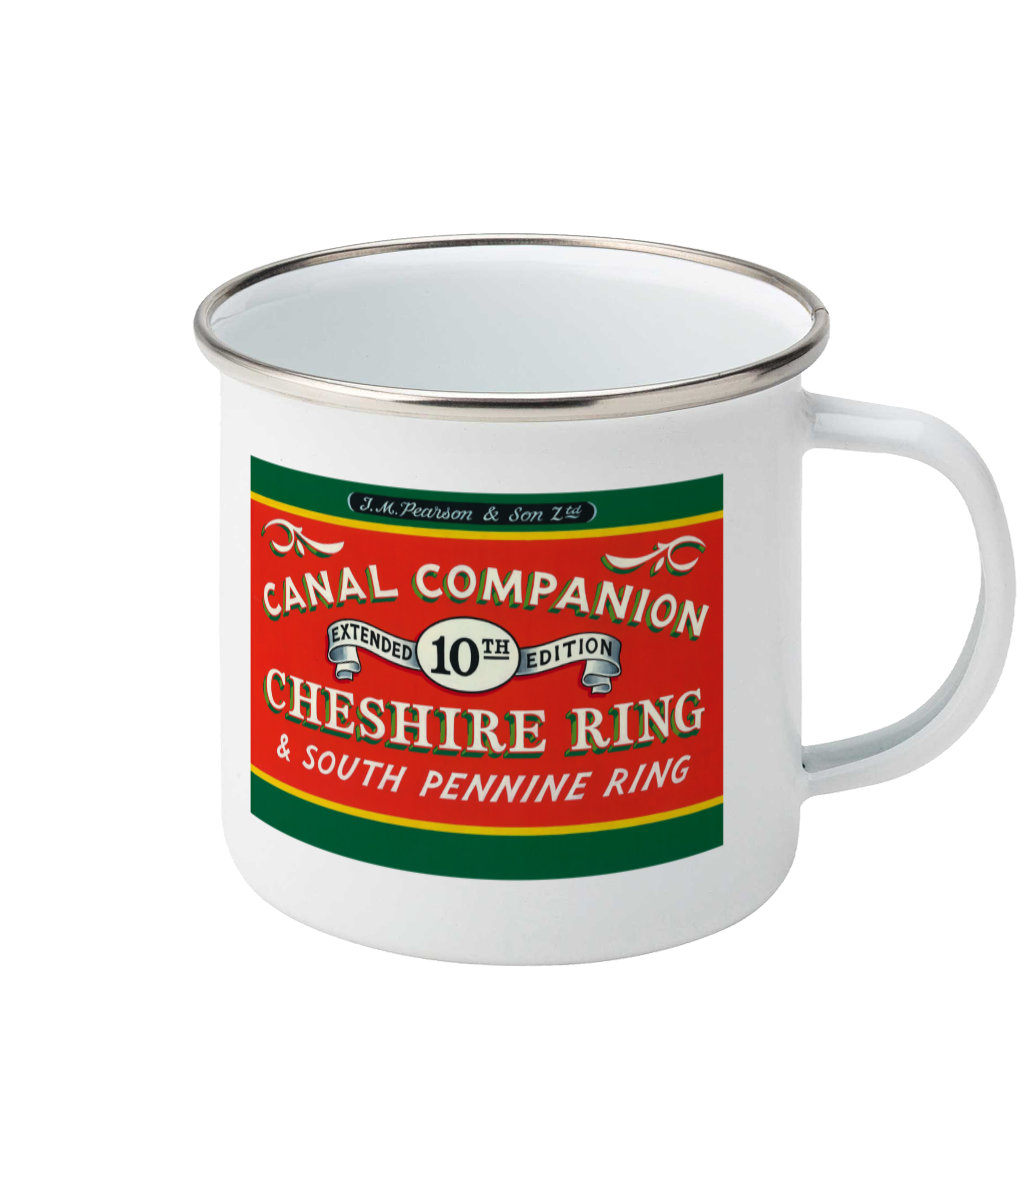 Pearson Canal Companion Enamel Mug - Cheshire Ring